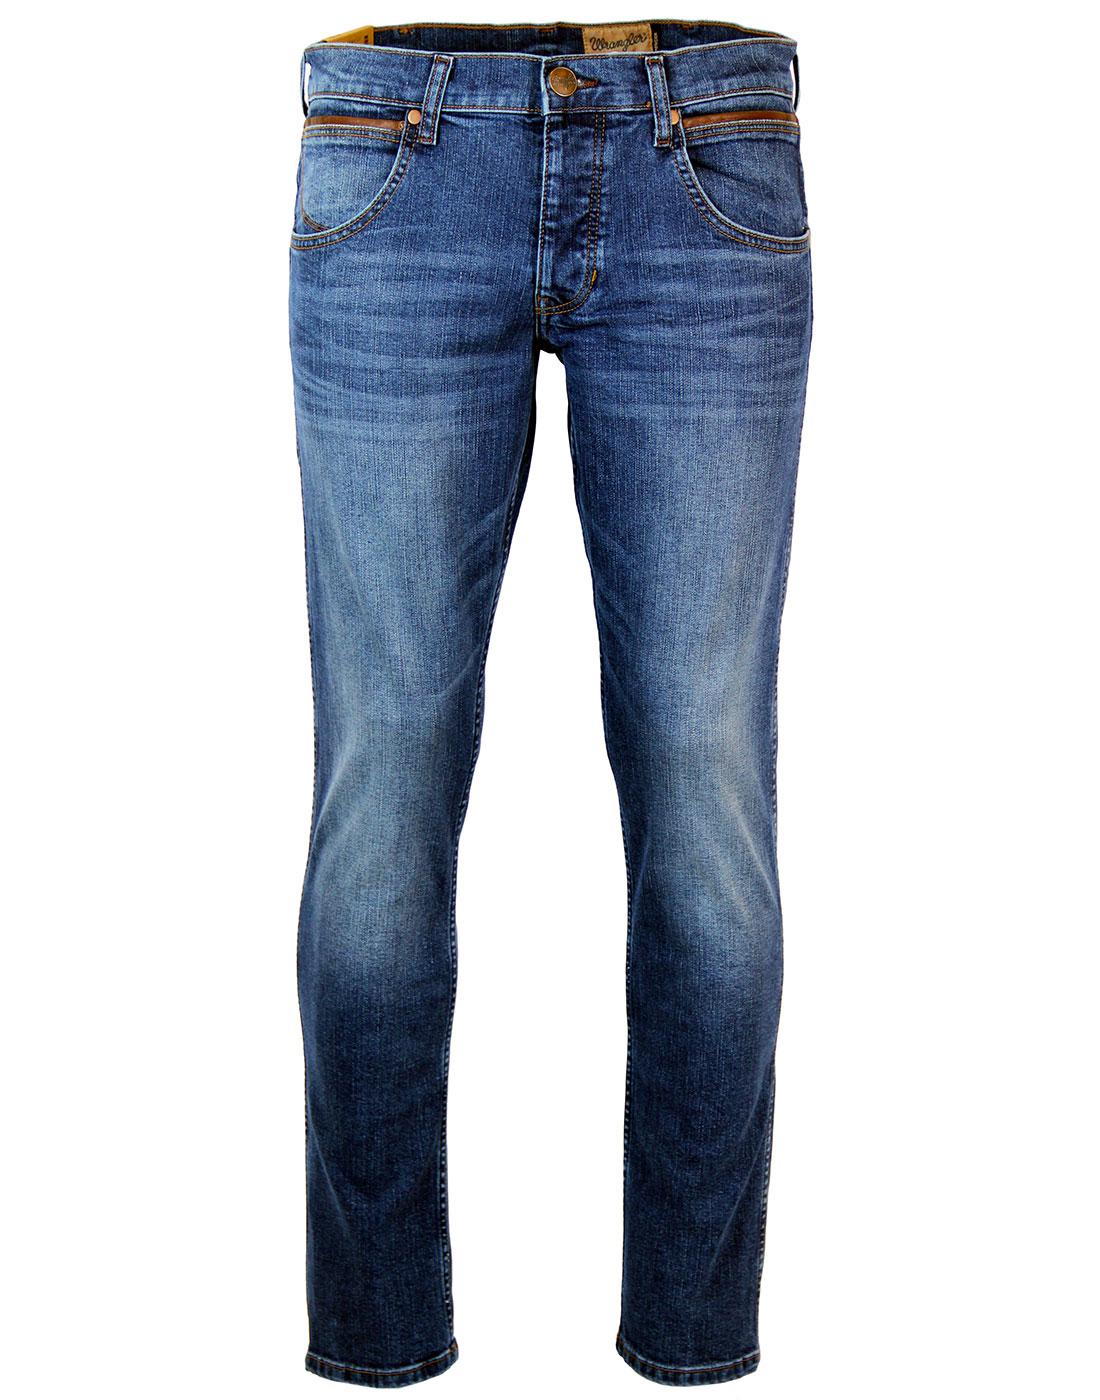 Spencer WRANGLER Retro Relaxed Slim Denim Jeans